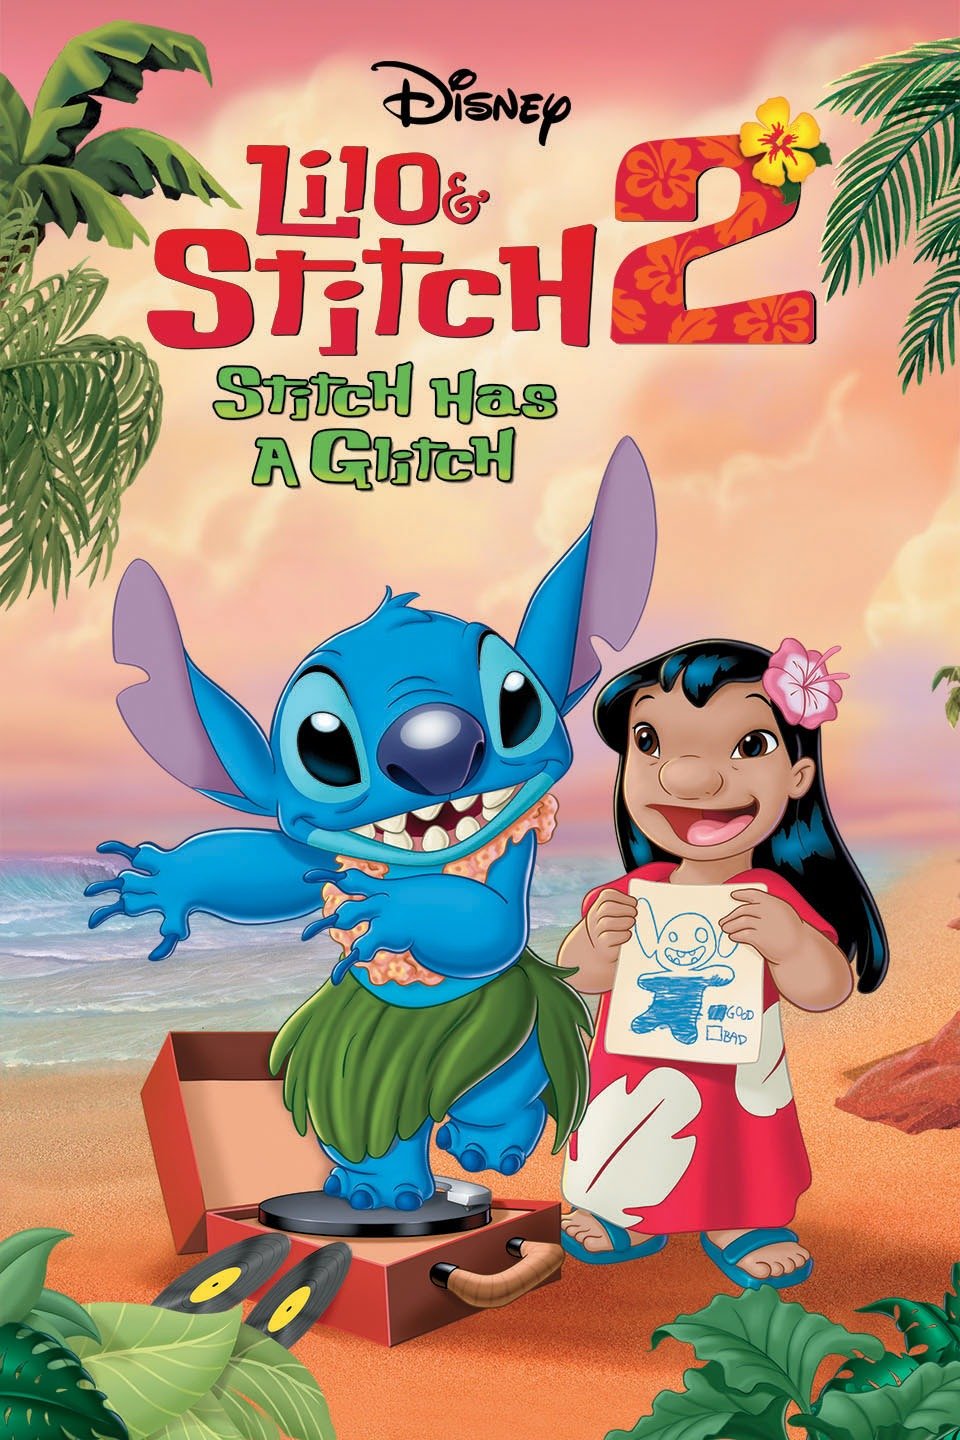 [Mini-HD] Lilo & Stitch 2: Stitch Has a Glitch (2005) ลีโล แอนด์ สติทช์ 2 ตอนฉันรักนายเจ้าสติทช์ตัวร้าย ภาค 2 [1080p] [พากย์ไทย 5.1 + อังกฤษ 5.1] [บรรยายไทย + อังกฤษ] [เสียงไทย + ซับไทย] [ONE2UP]